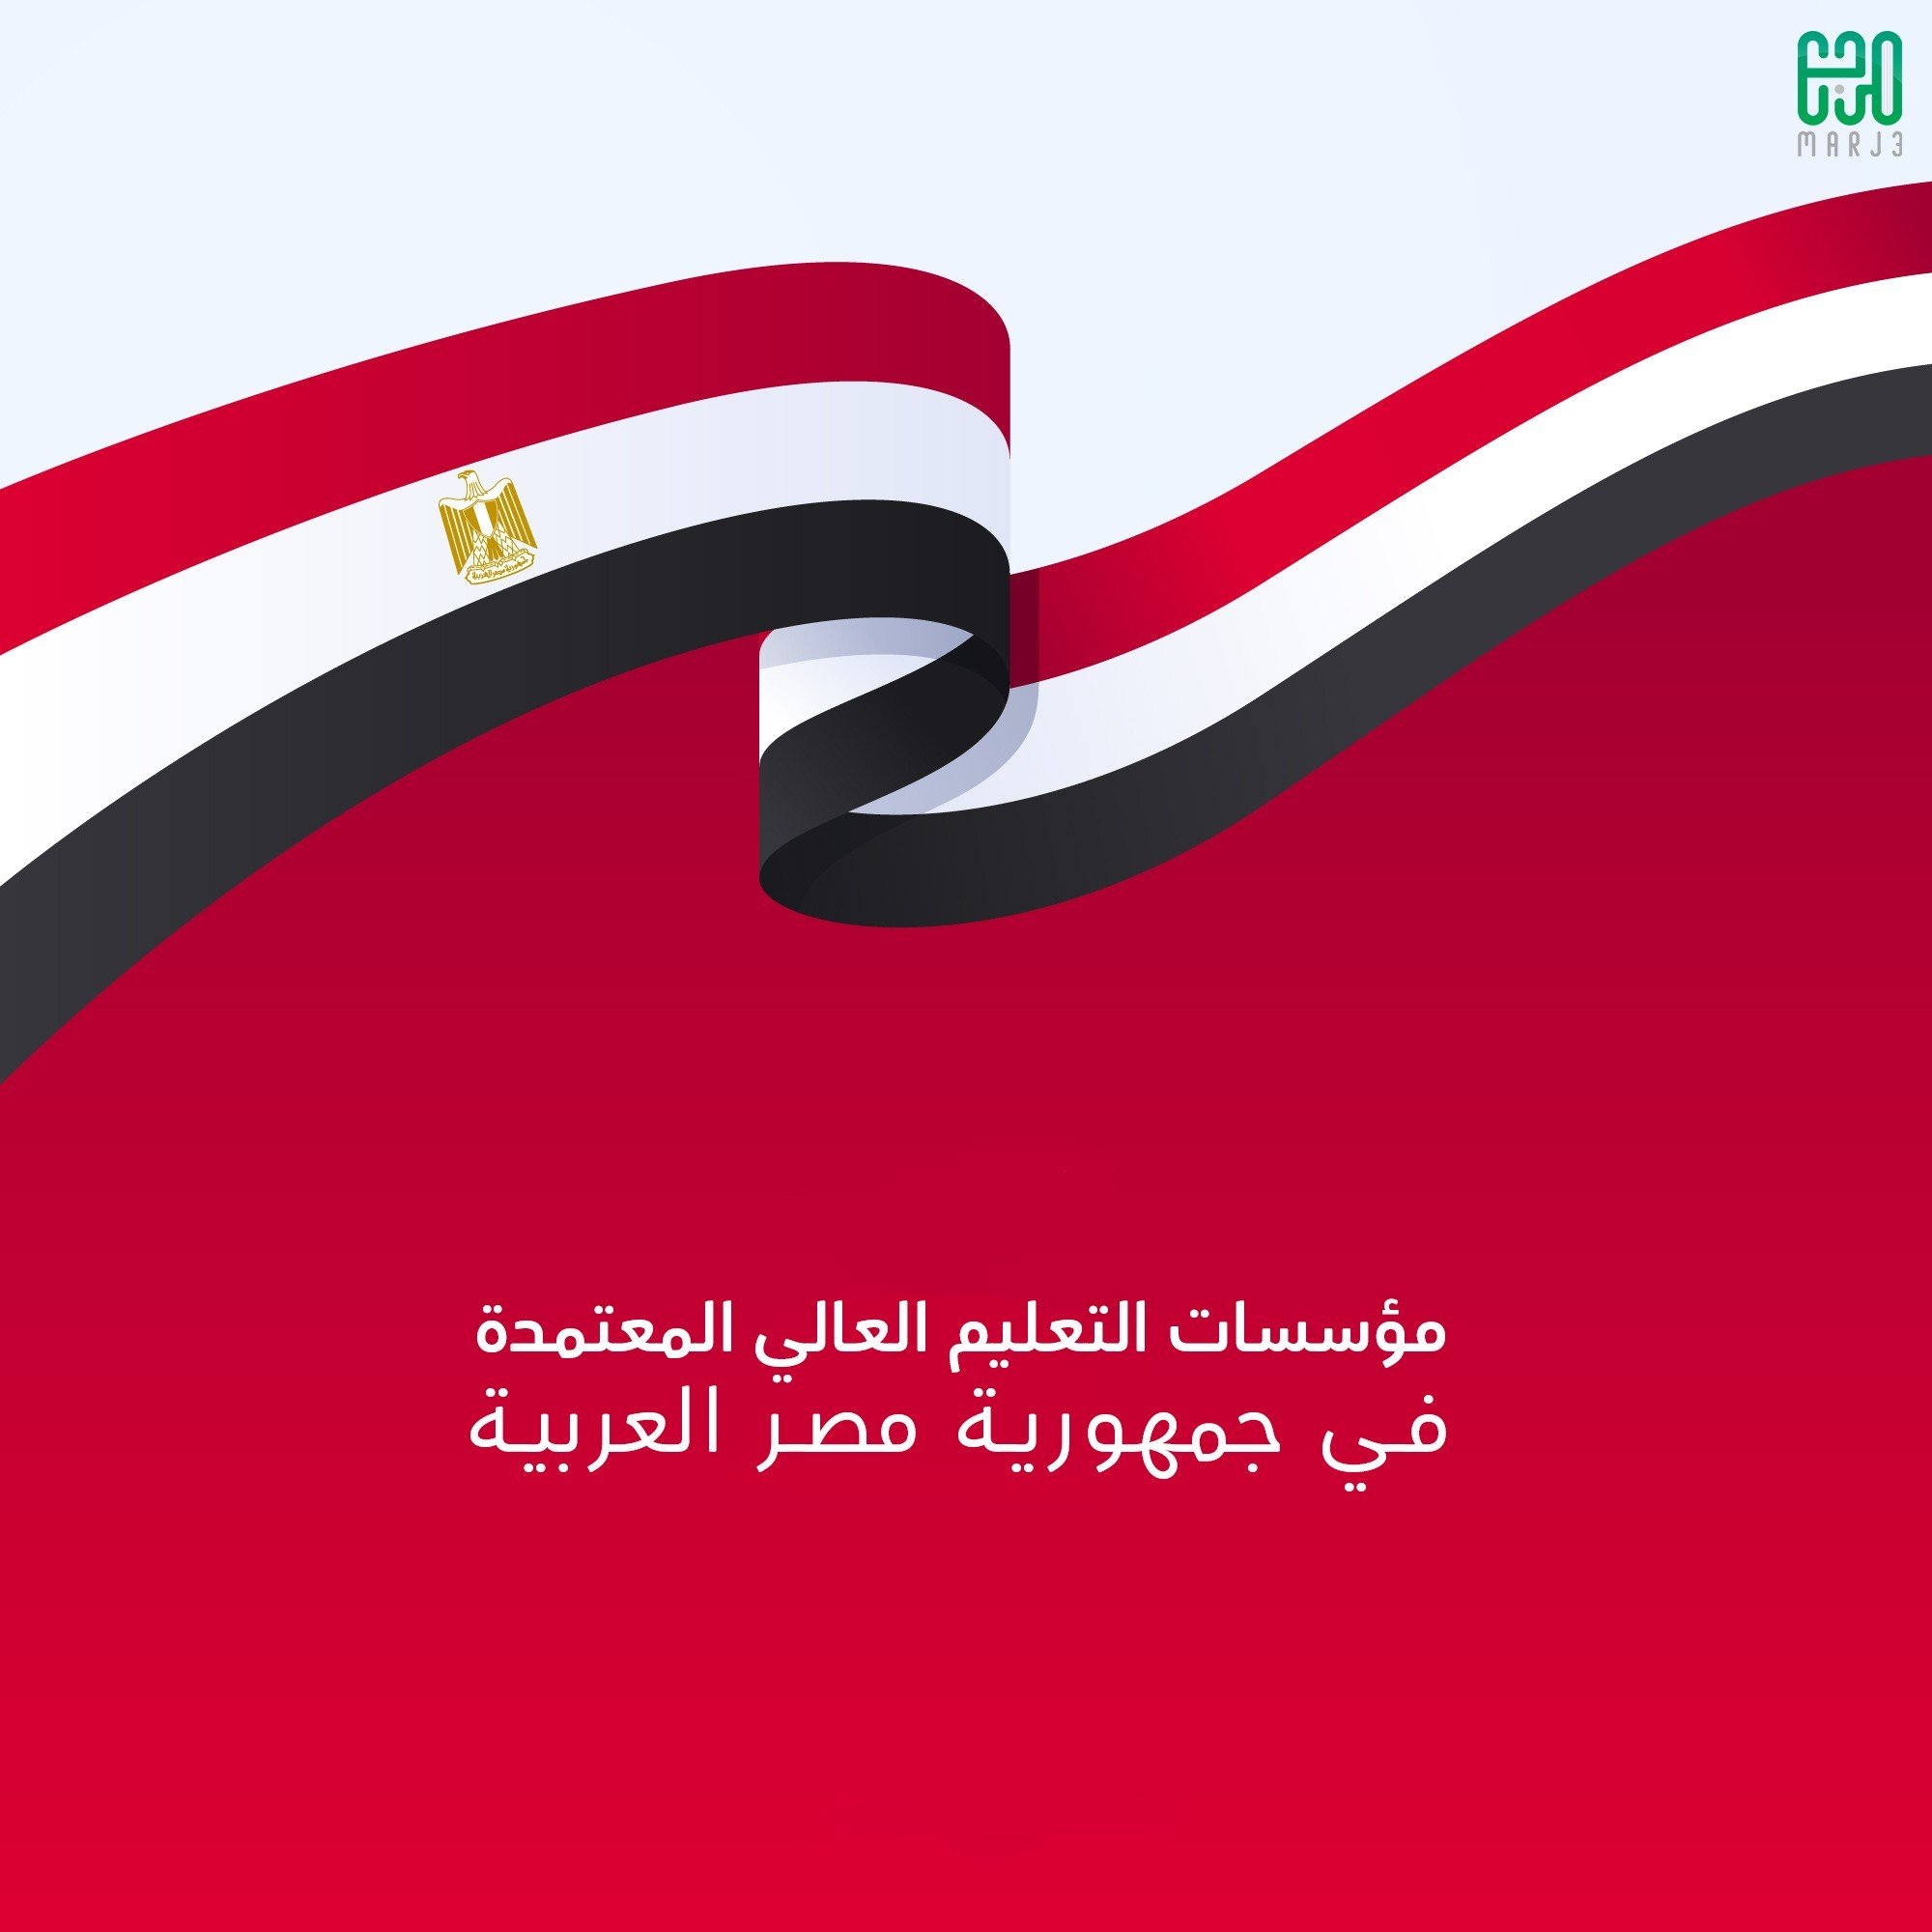 بيان من وزارة التعليم العالي بمؤسسات التعليم العالي المعتمدة في جمهورية مصر العربية